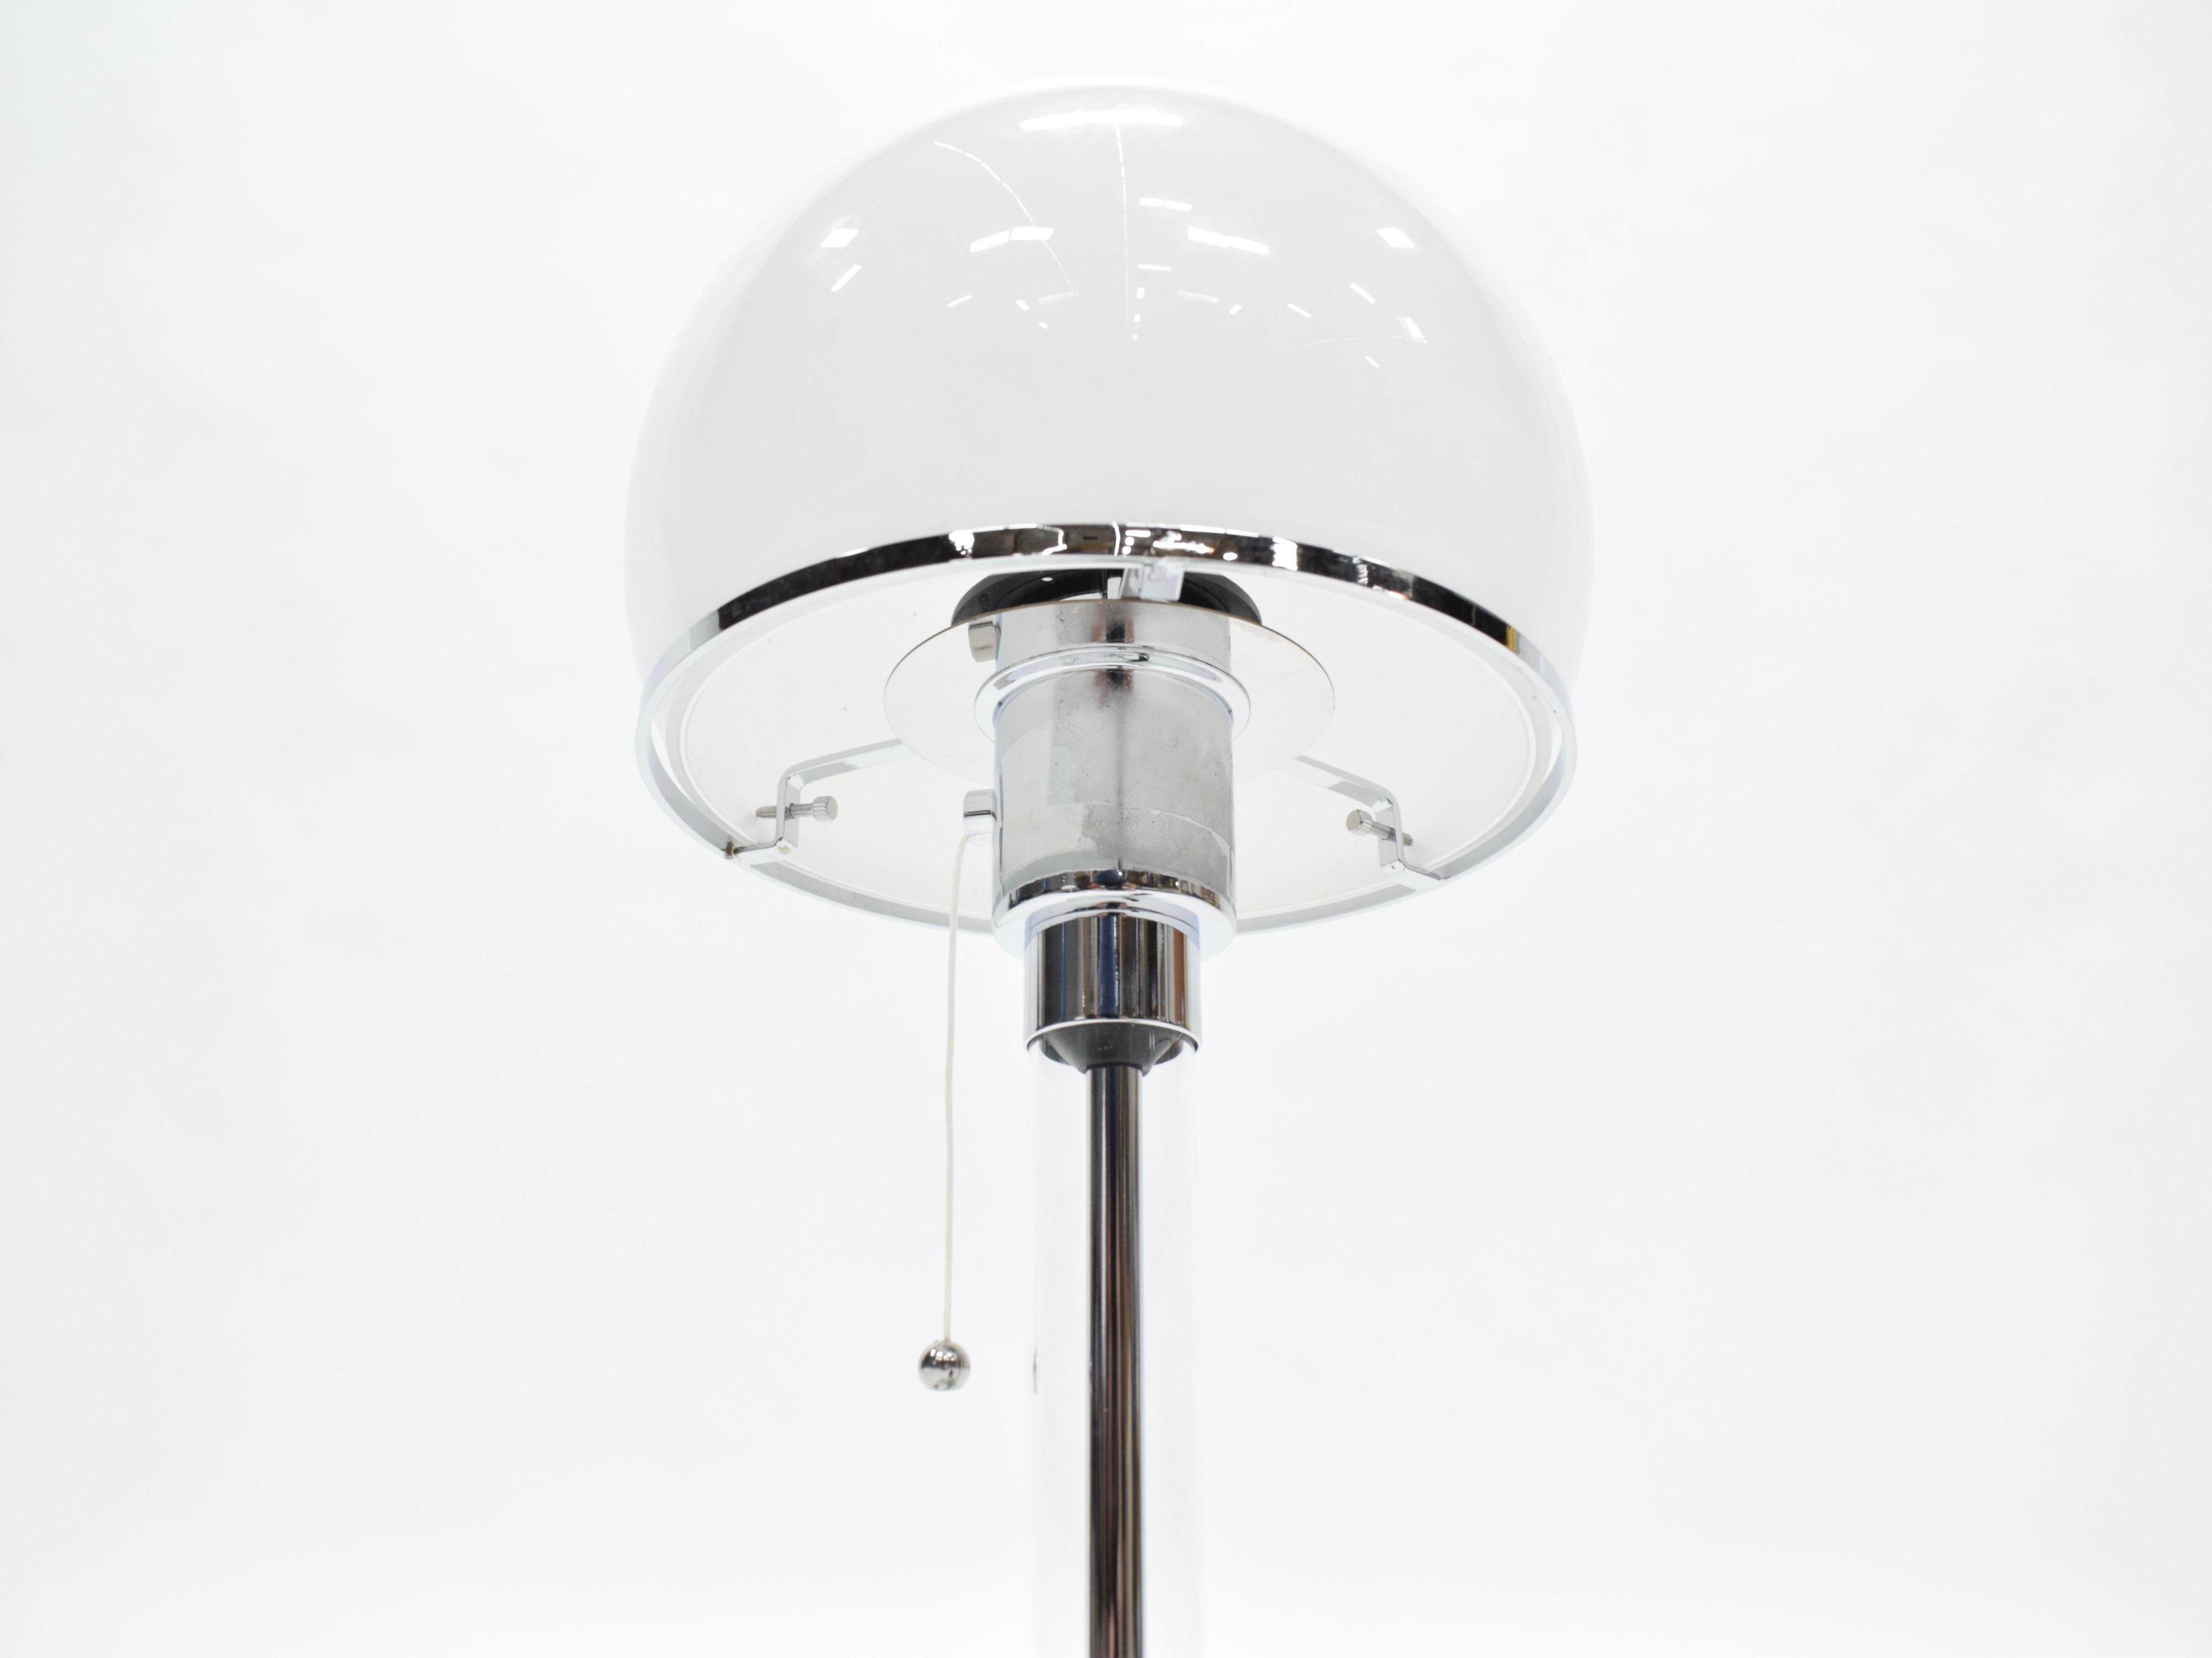 Bauhaus-Tischleuchte aus Chrom und Glas des deutschen Designers Wilhelm Wagenfeld für Tecnolume aus den 1920er Jahren. Die Lampen wurden für US-Steckdosen verdrahtet und können mit einer normalen 75-Watt-Edison-Birne betrieben werden.
Neu produziert